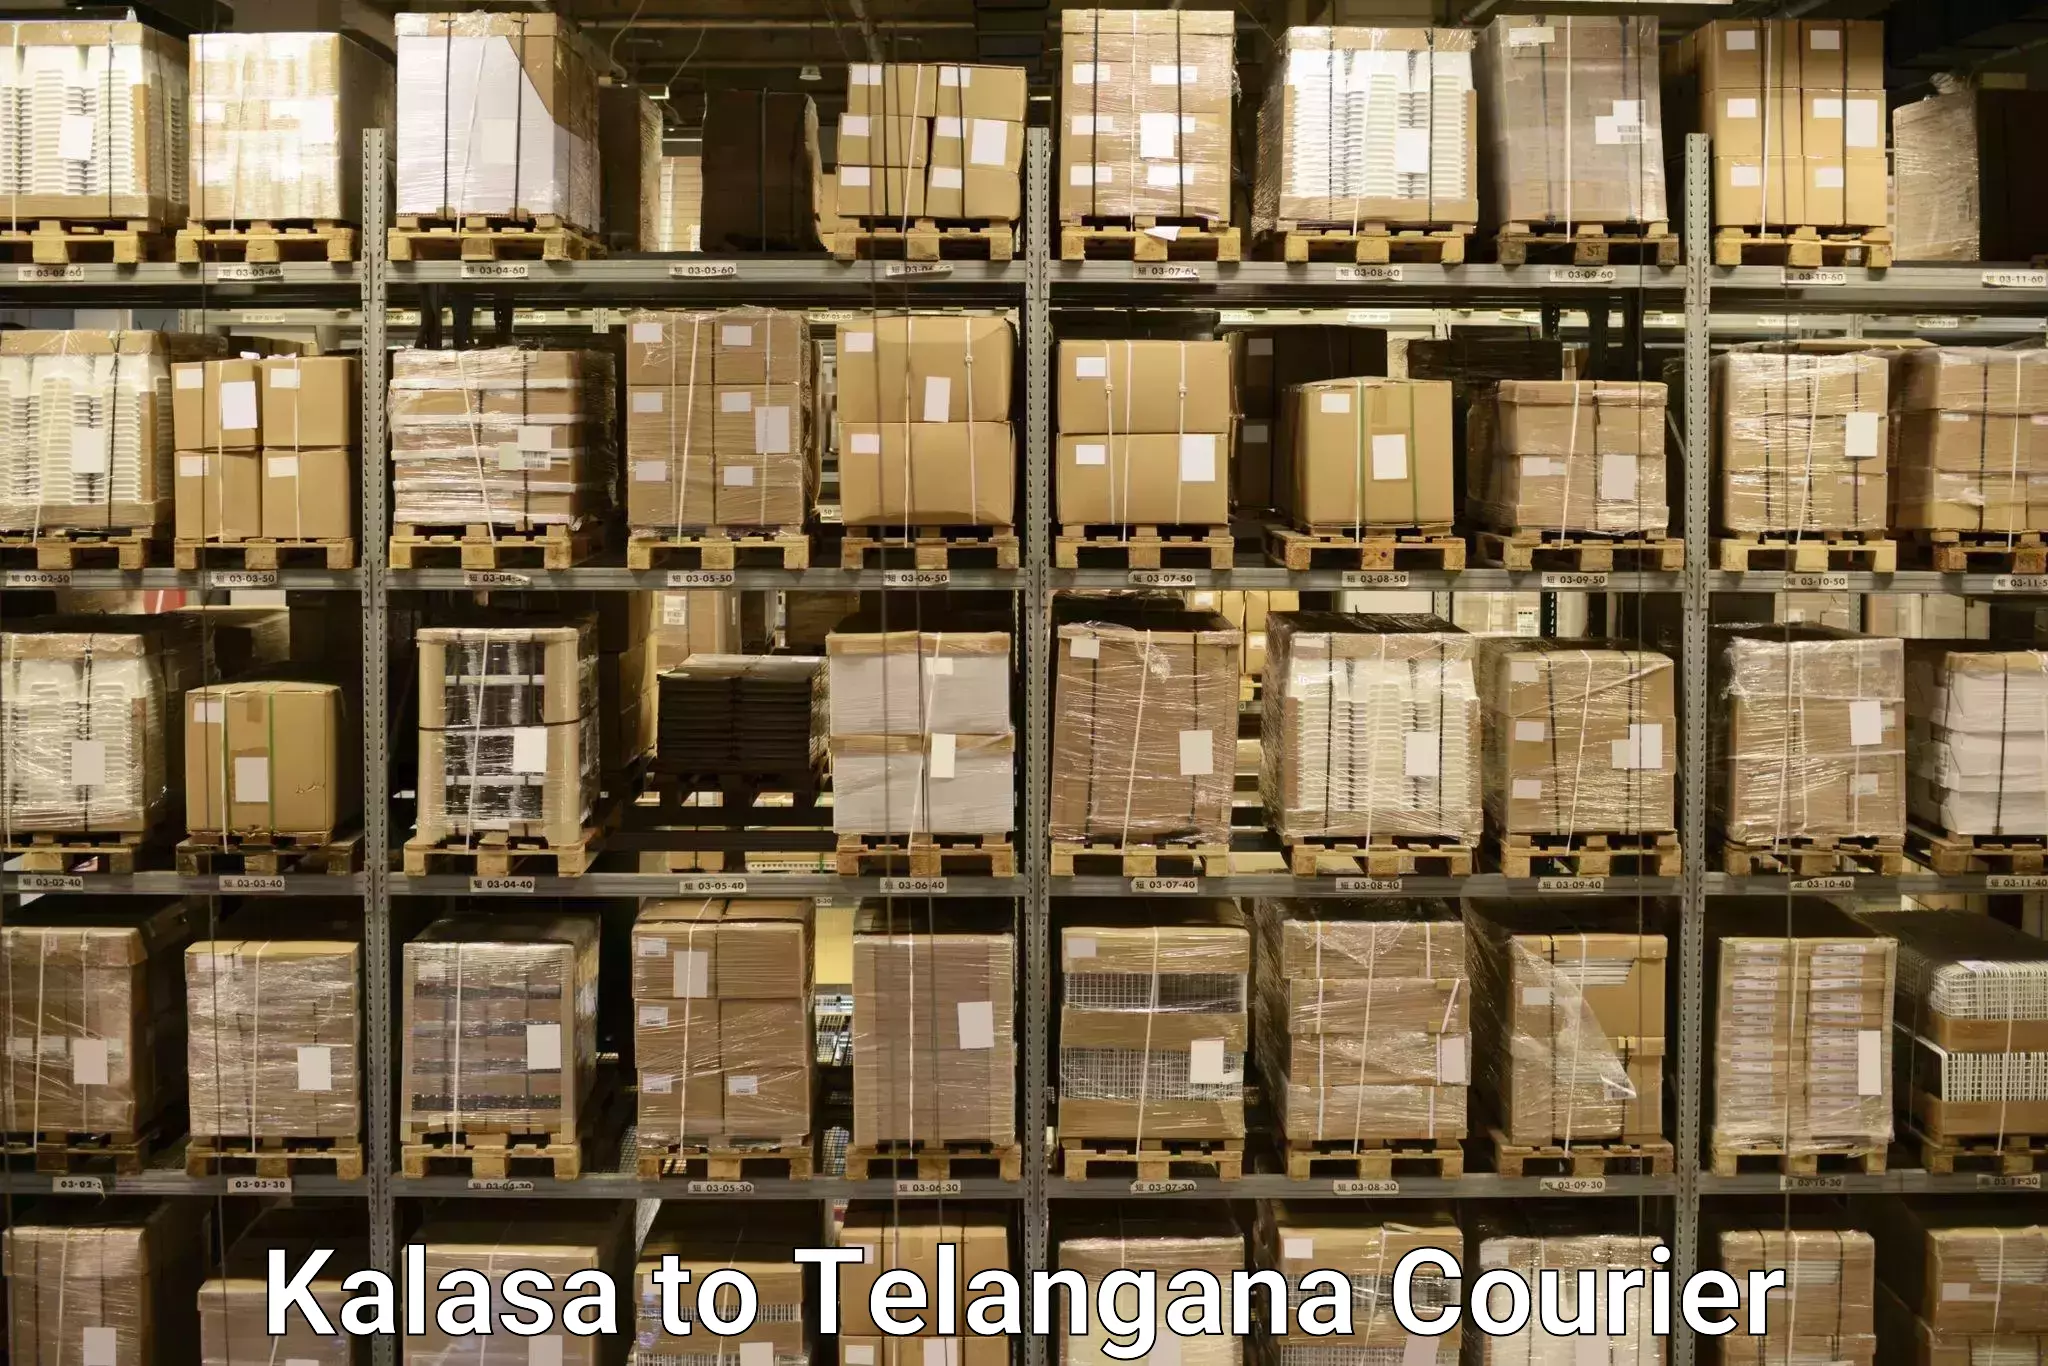 Luggage delivery network Kalasa to Osmania University Hyderabad